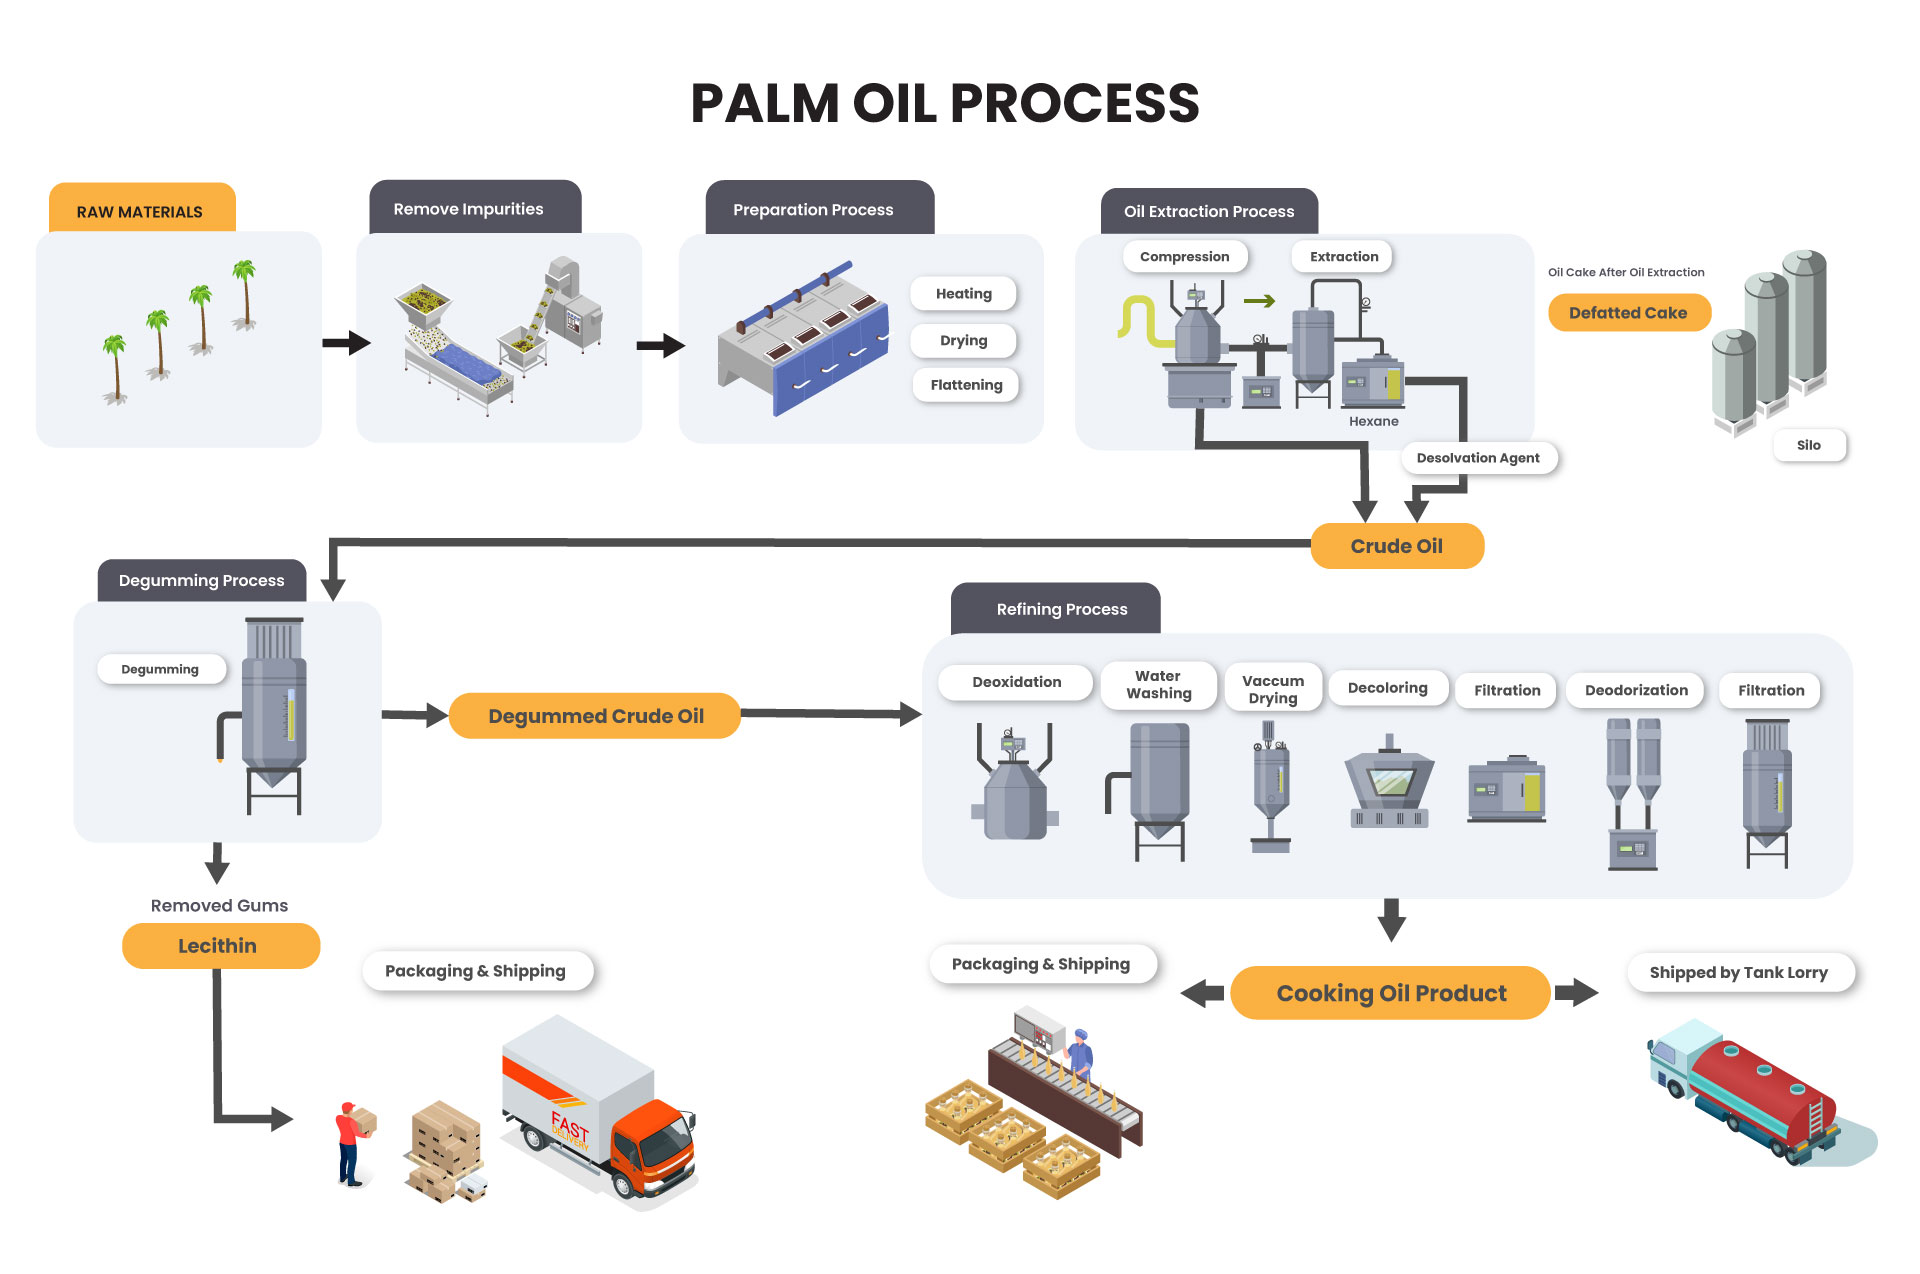 Palm Oil Process Flow